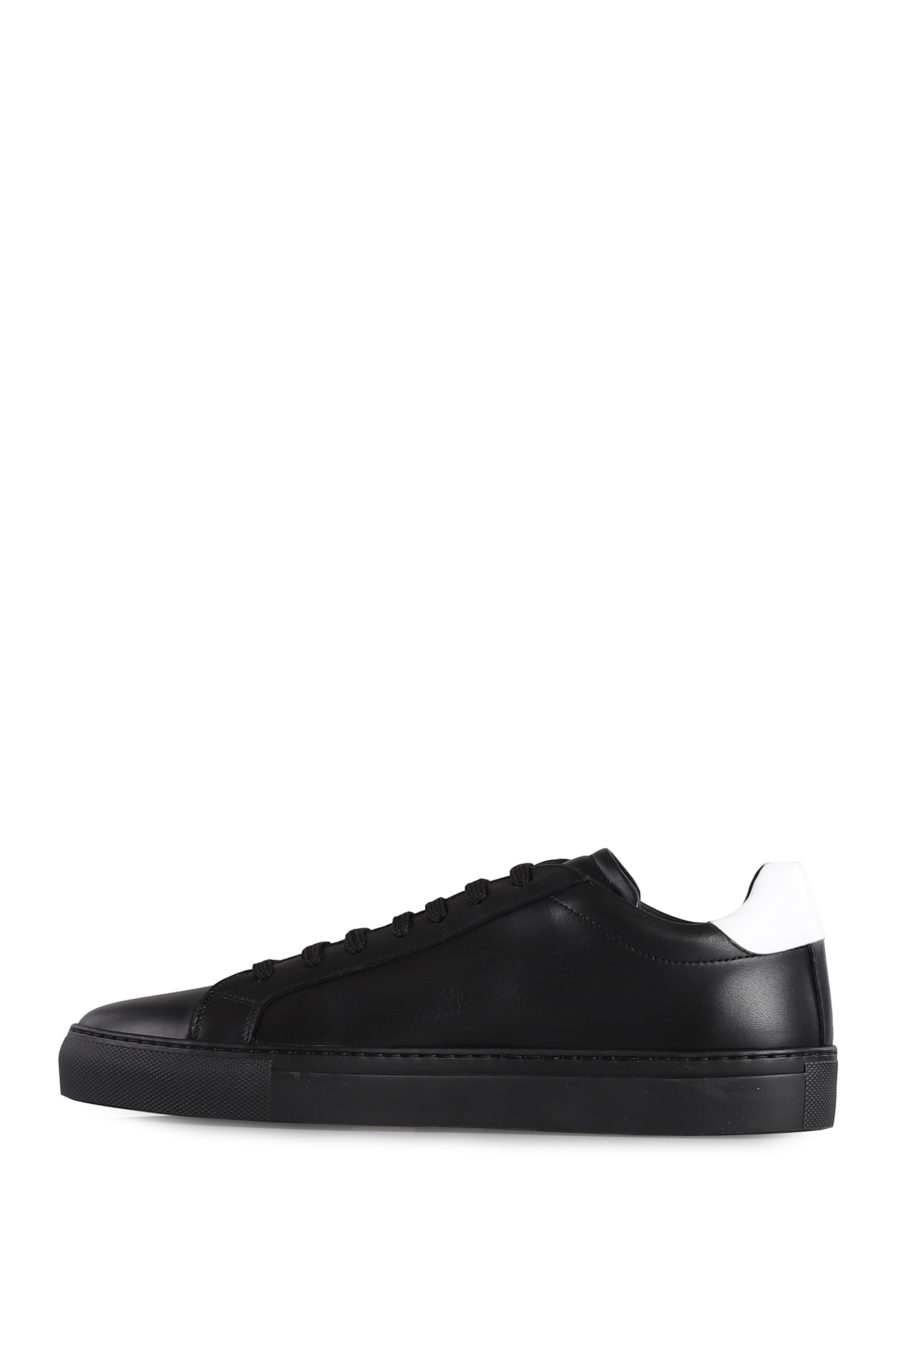 Zapatillas negras con logotipo blanco - IMG 1052